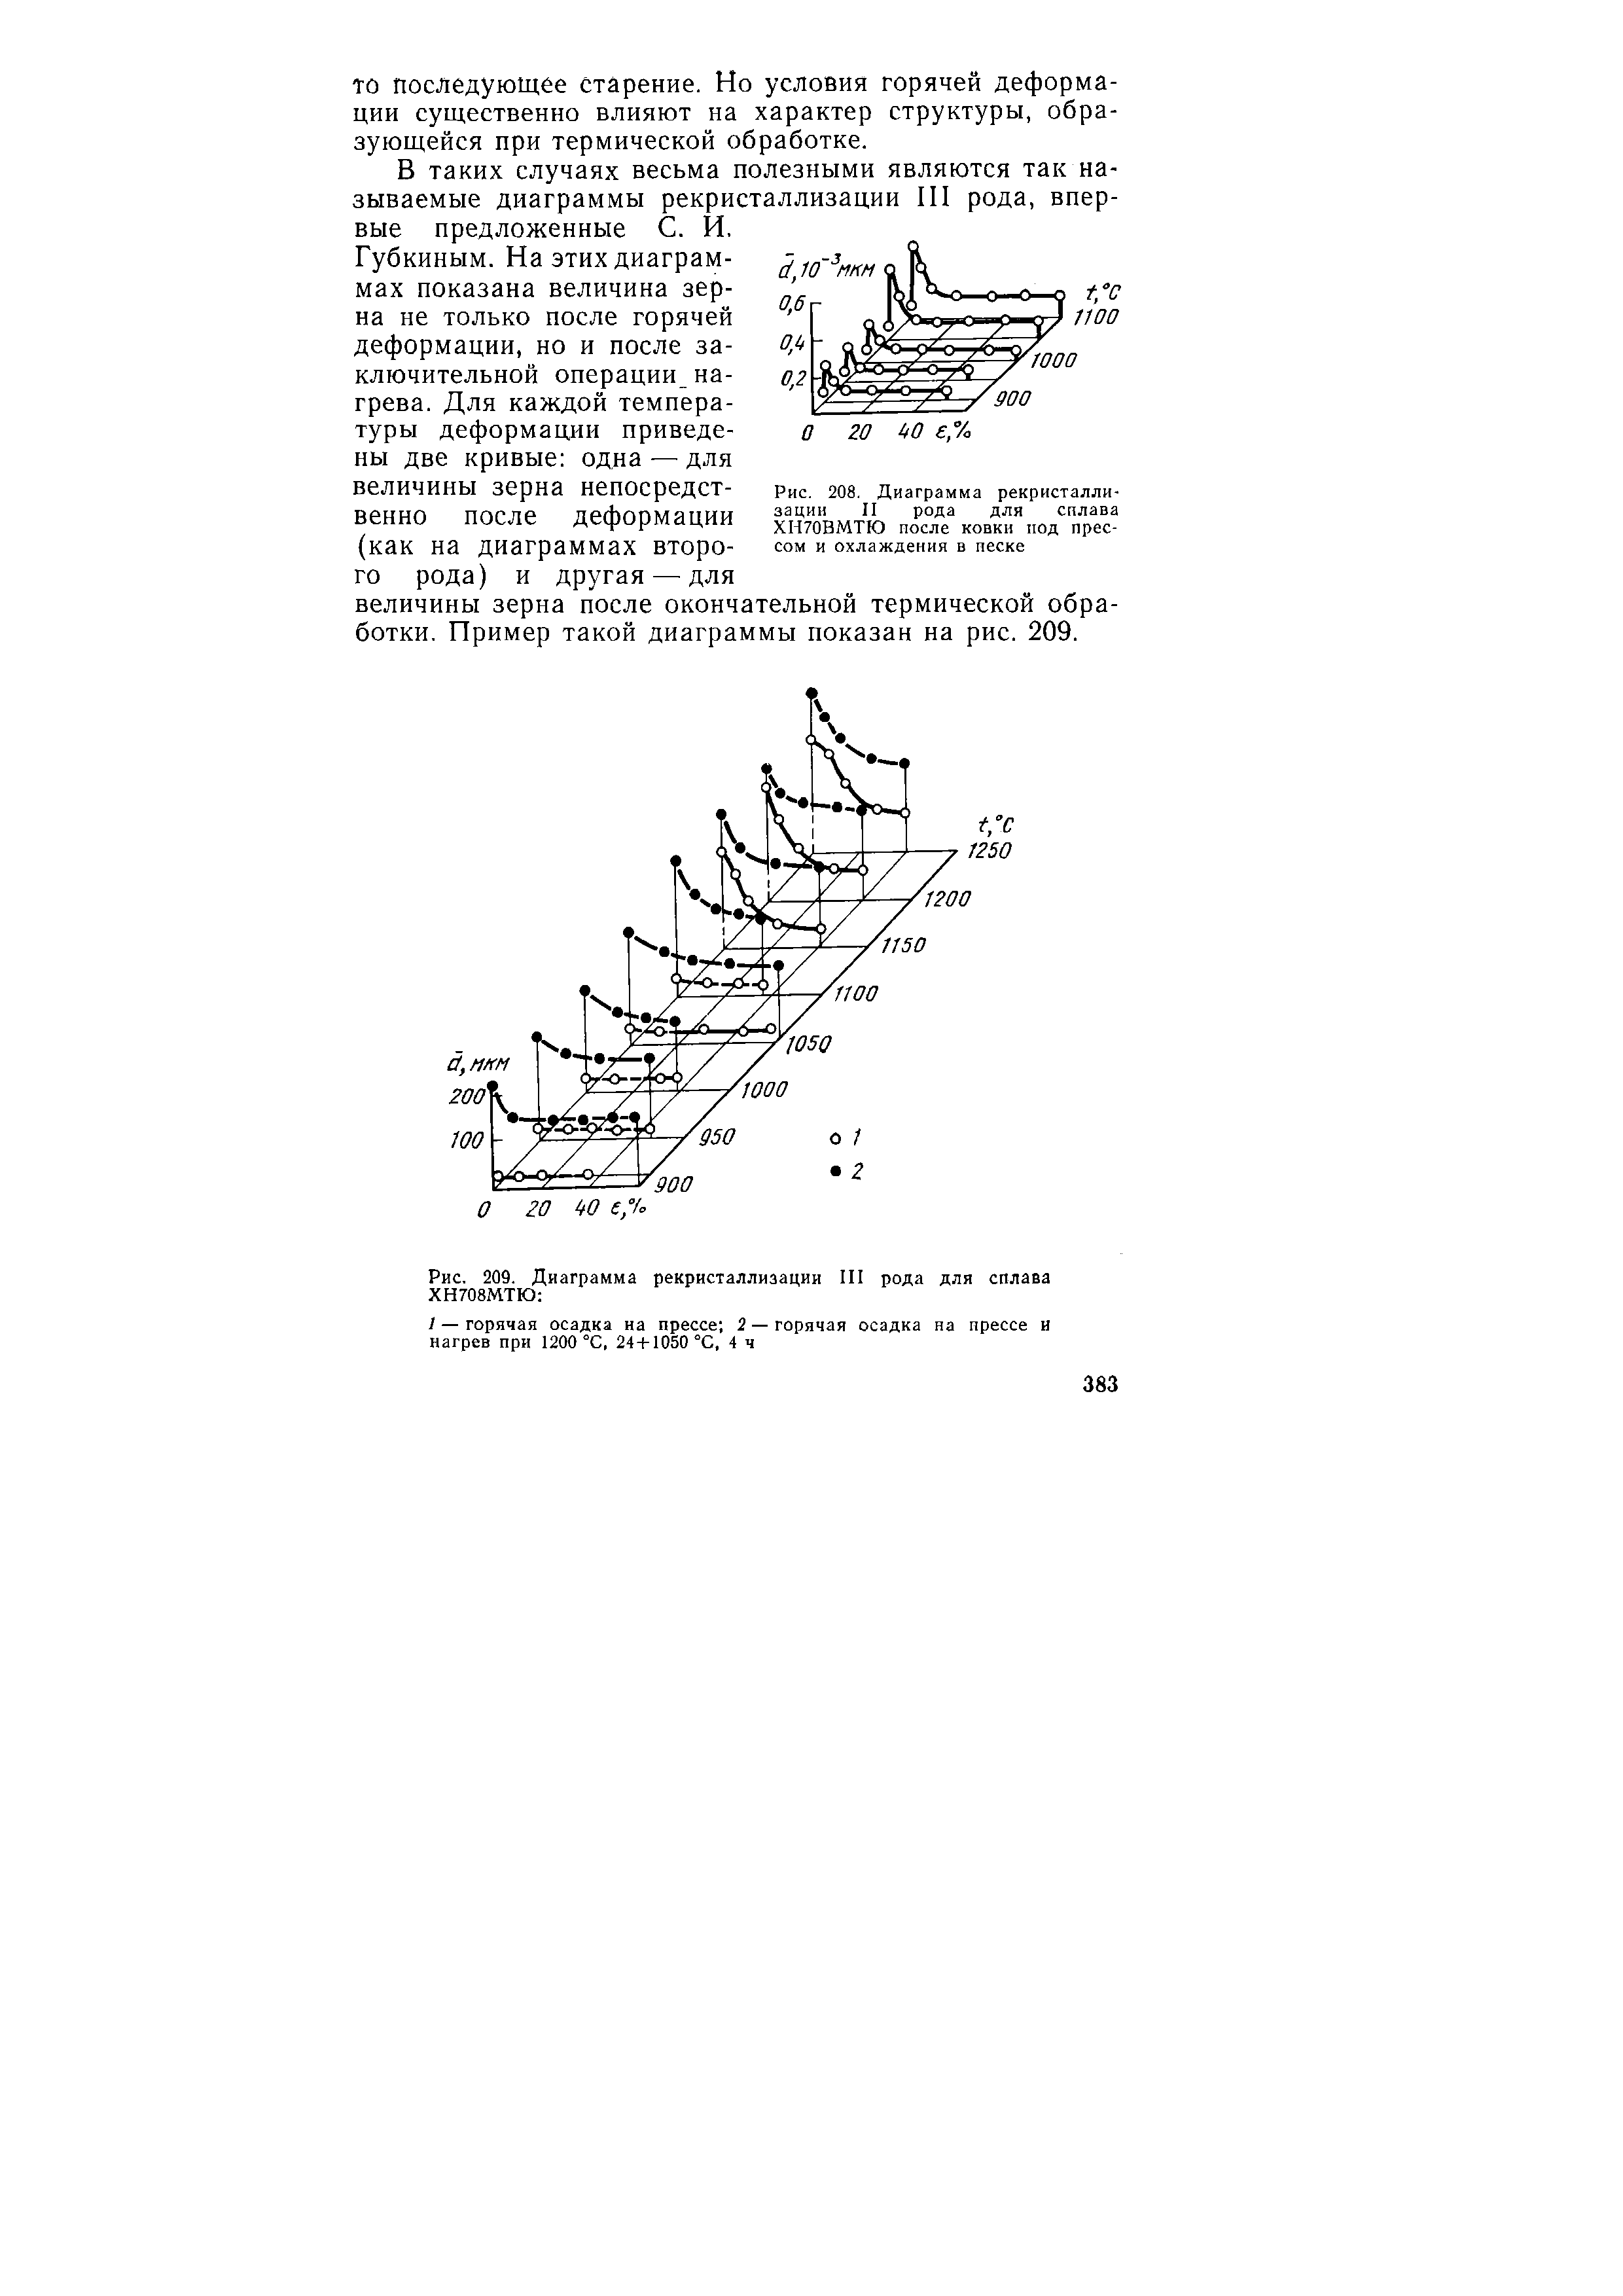 Рис. 208. Диаграмма рекристаллизации II рода для сплава ХН70ВМТЮ после ковки под прессом и охлаждения в песке
